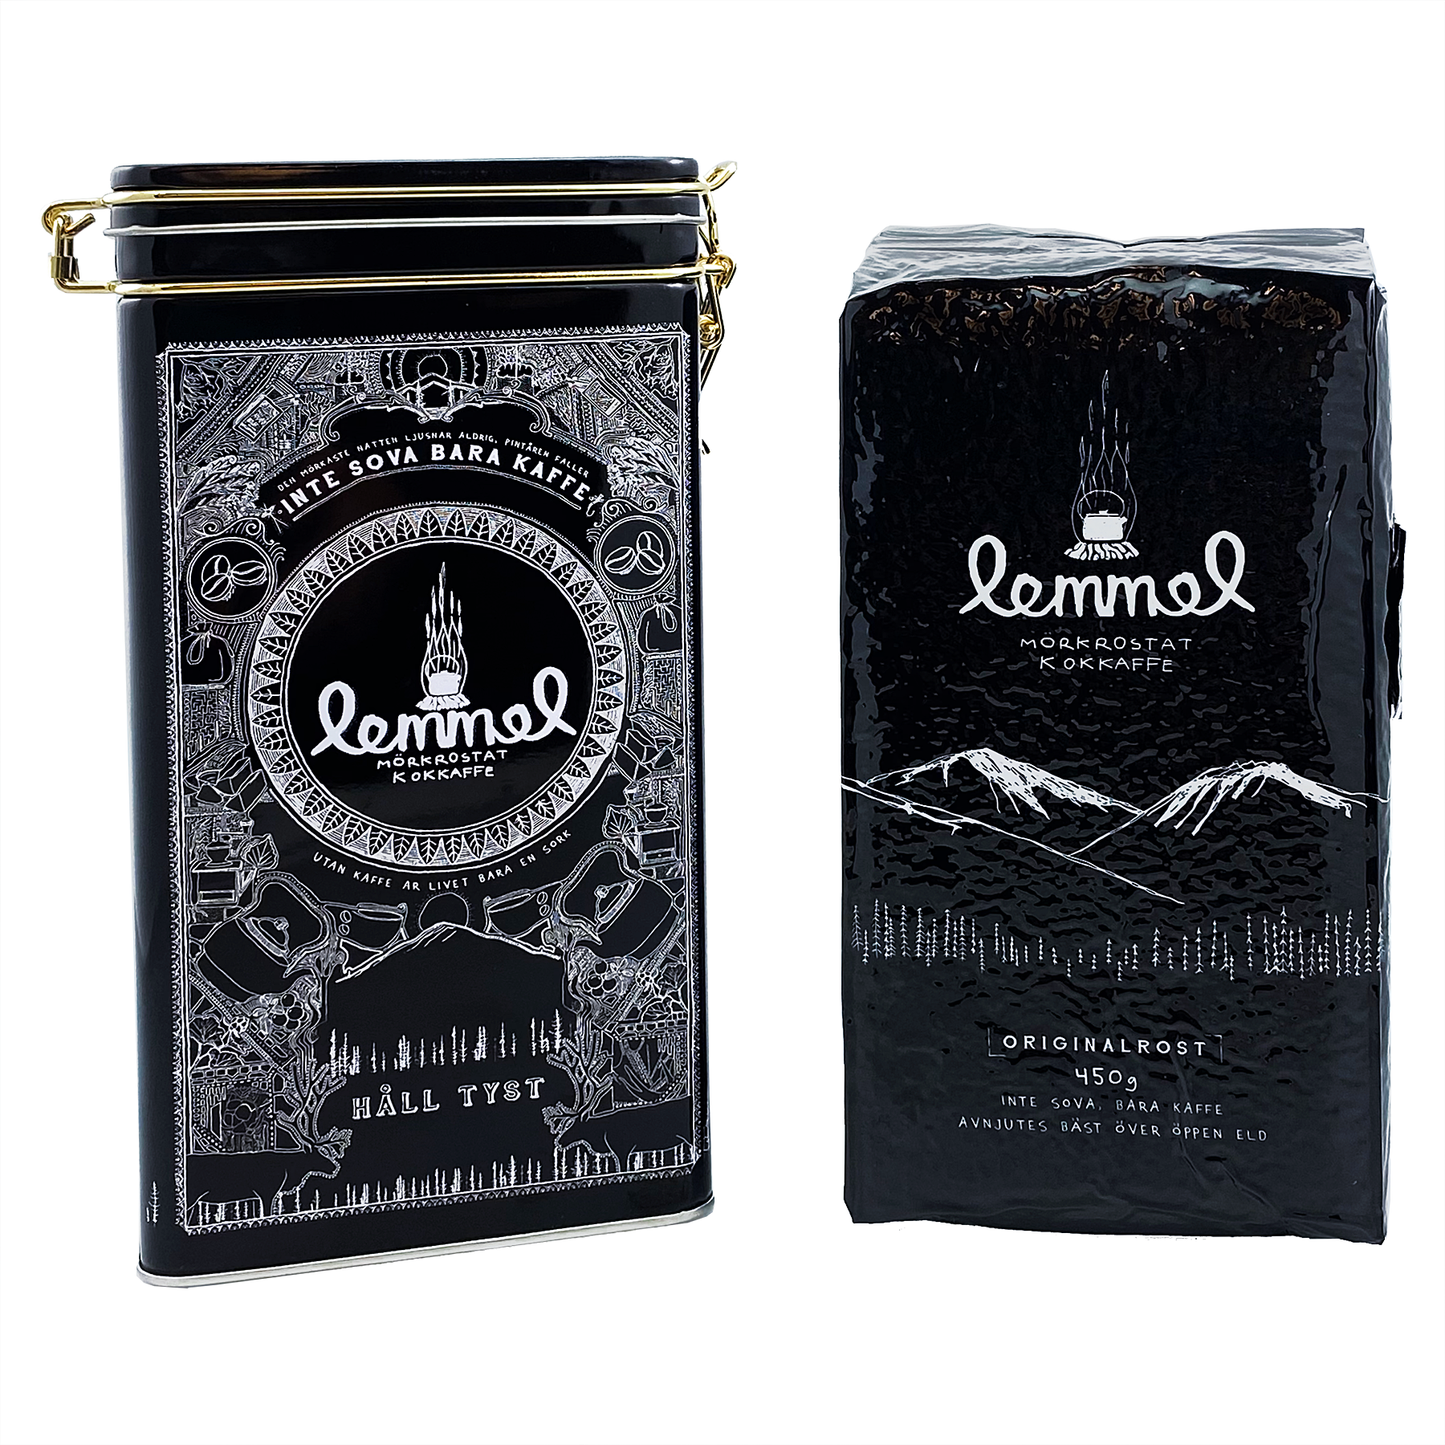 Paket Lemmelkaffe original 450gr och kaffeburk